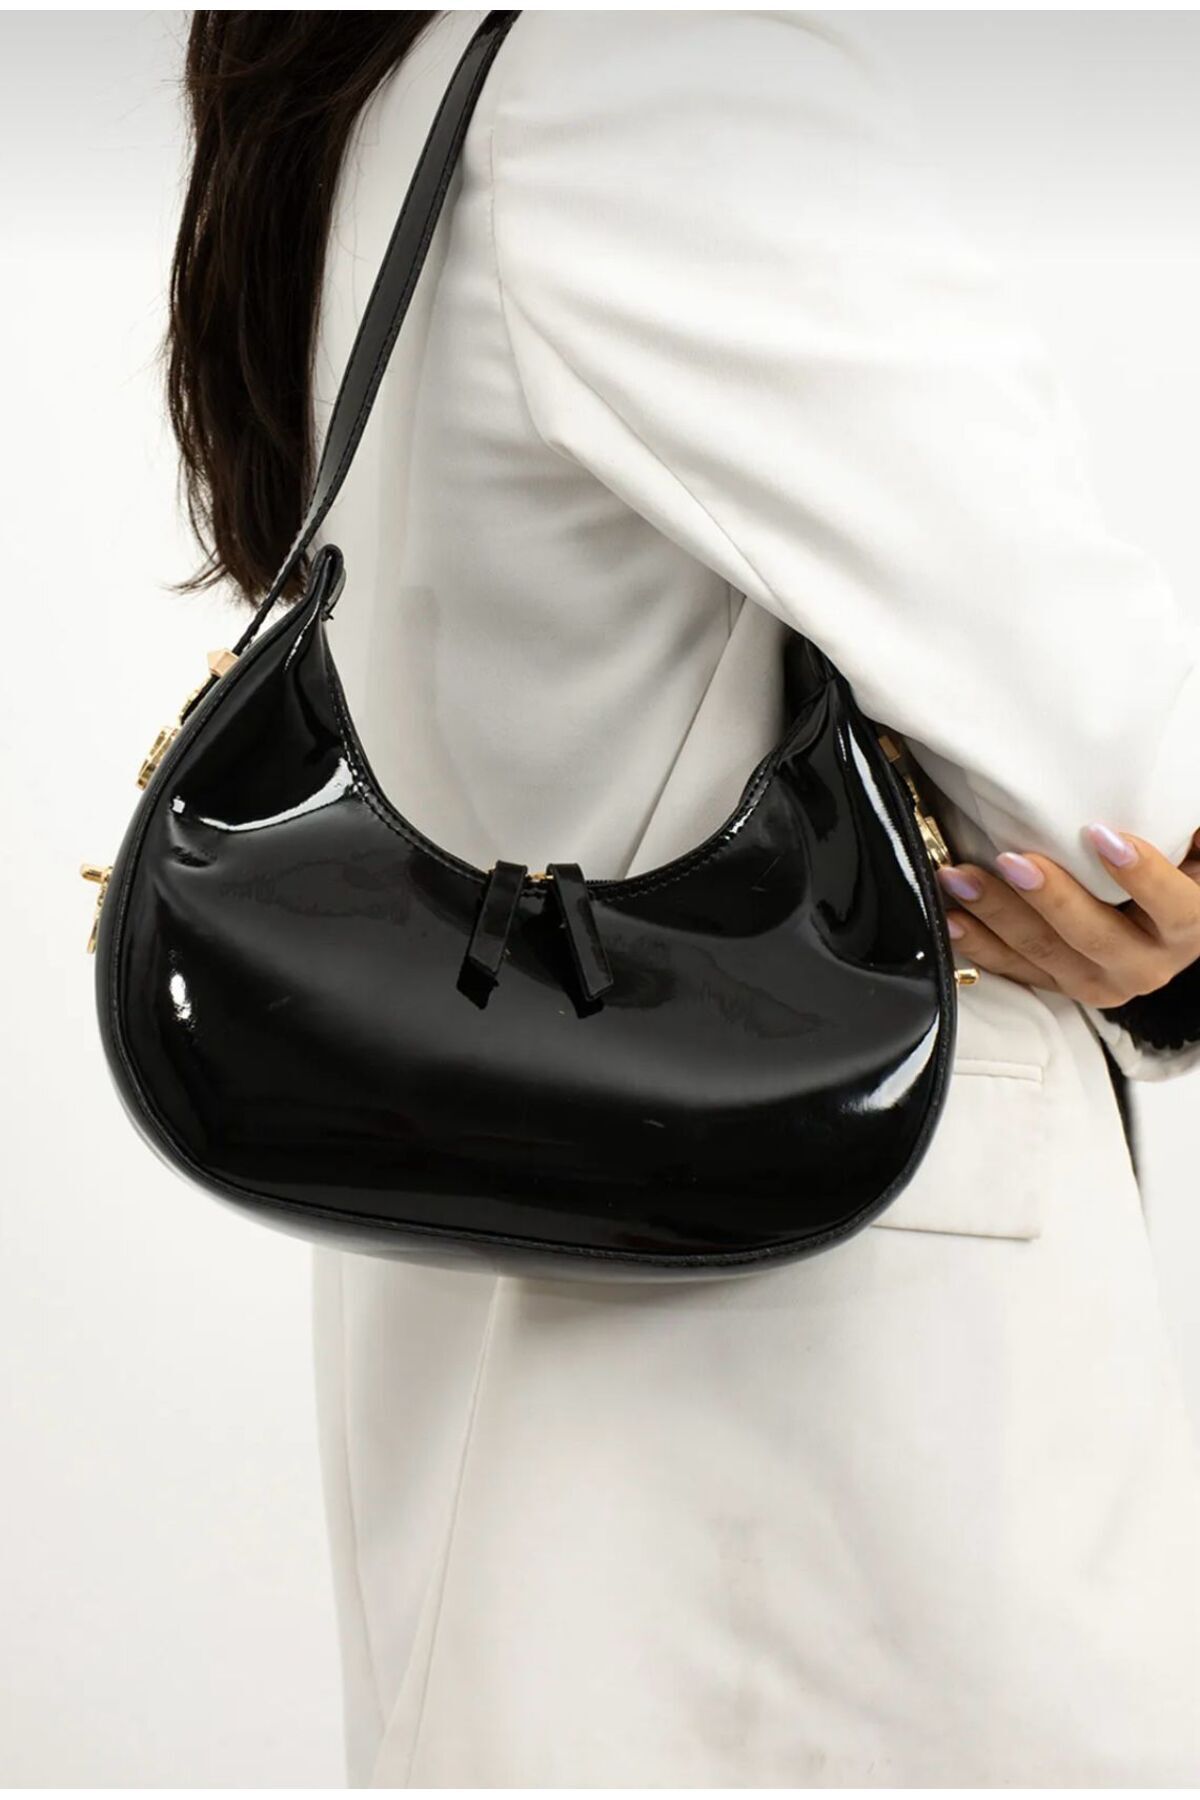 Kristal Cherry model Rugan askı boyu ayarlanabilir kadın omuz çantası